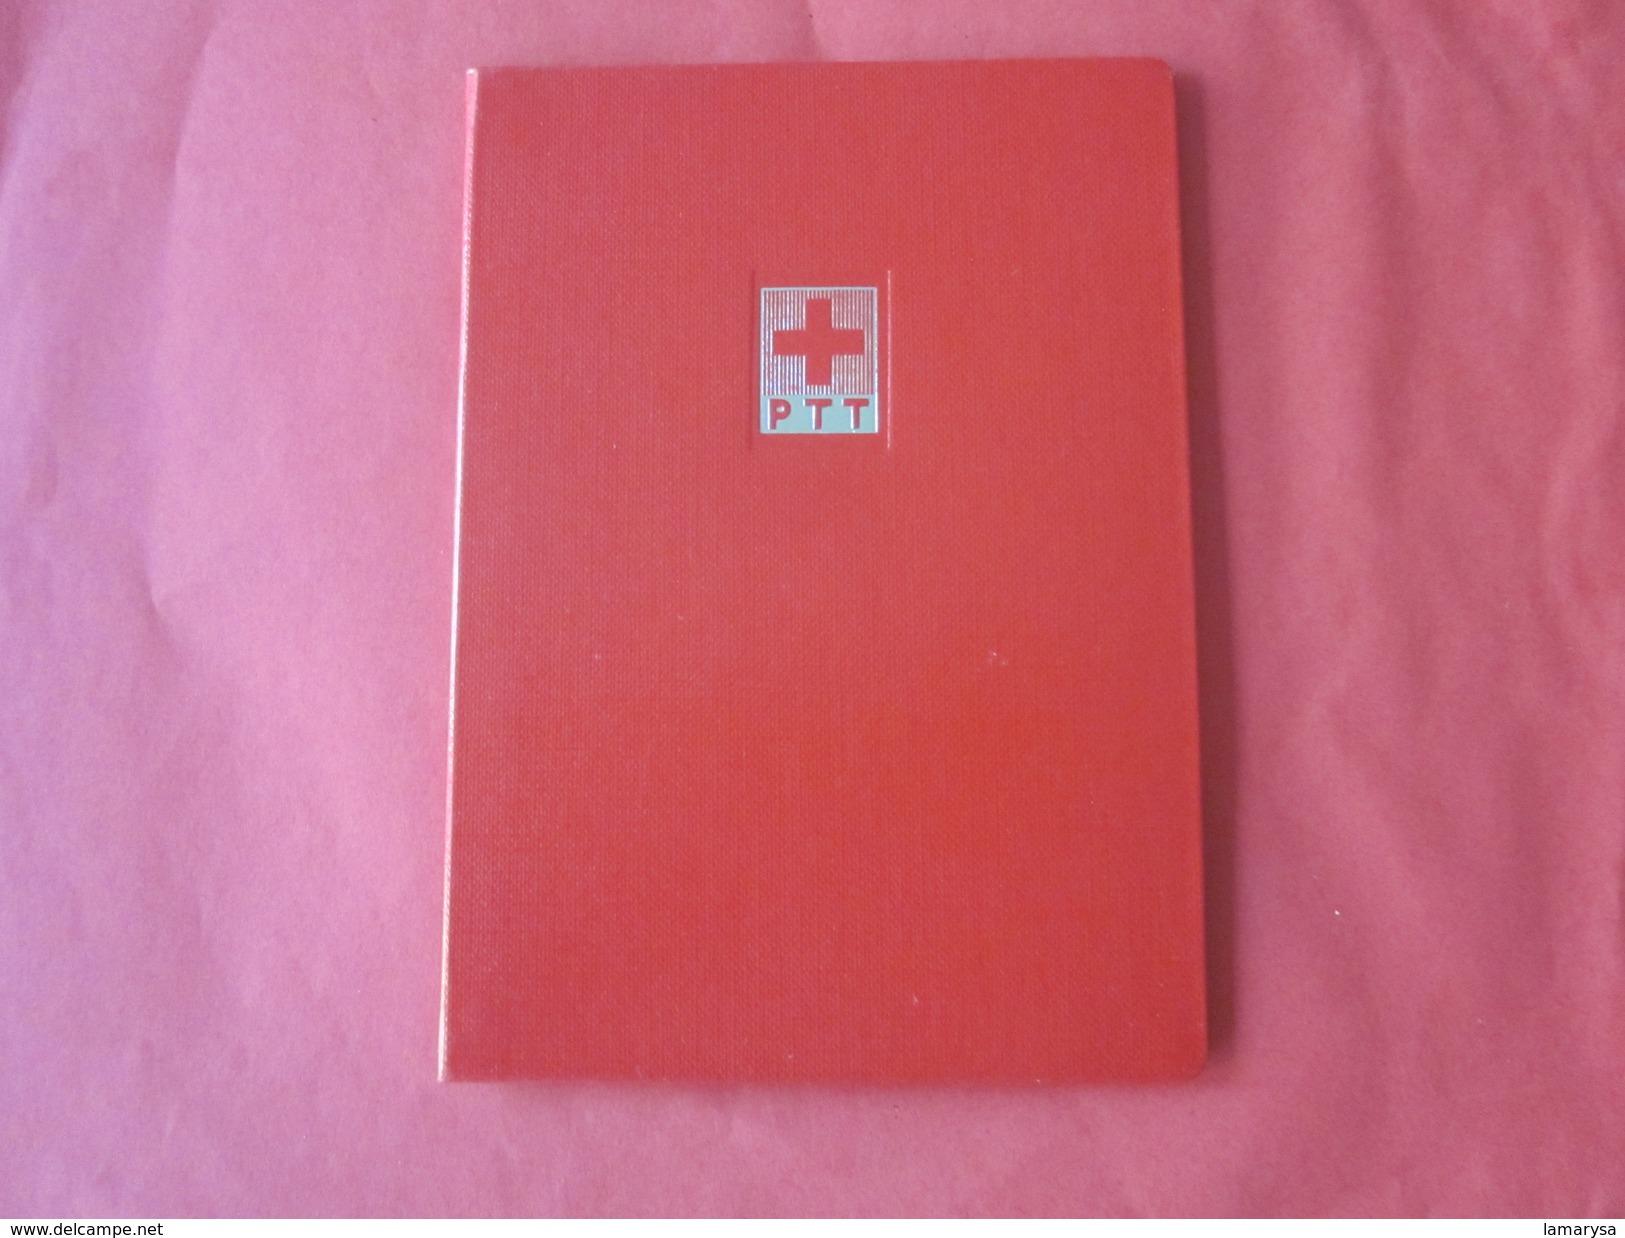 Helvetia Suisse Croix Rouge Matériel,Album Rouge à Bande Pour Timbres Postes Petit Format,fond Blanc Port Postal Offert - Formato Pequeño, Fondo Blanco